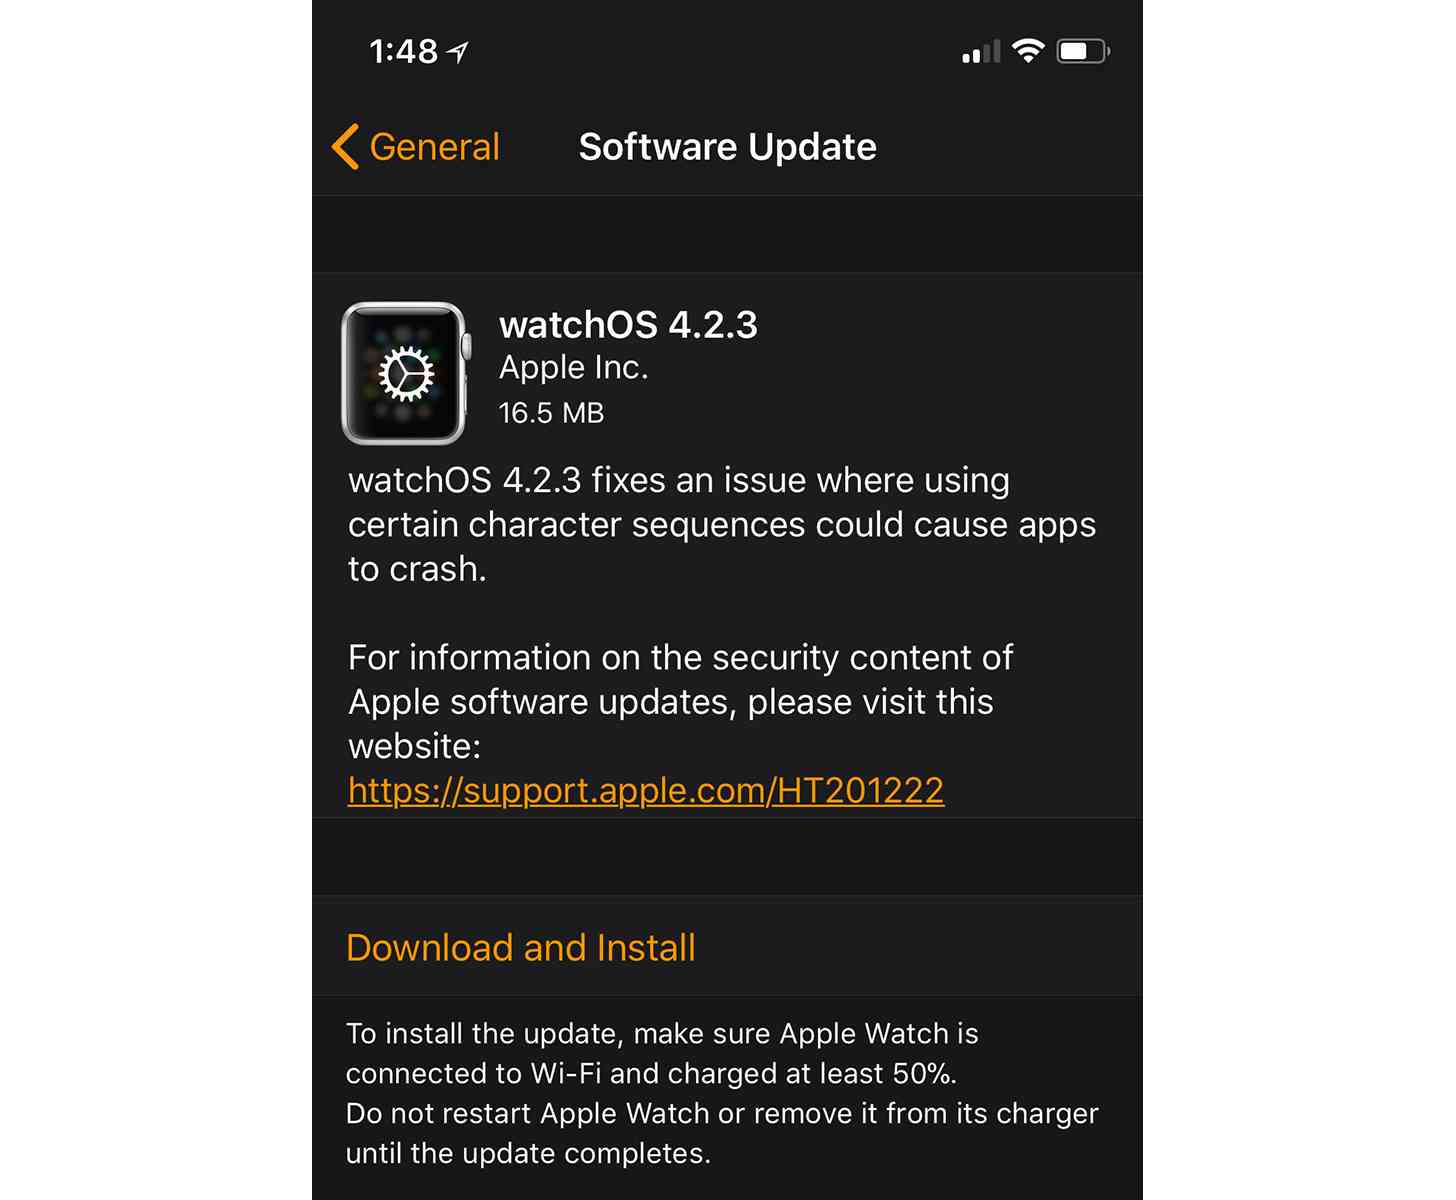 watchOS 4.2.3 update